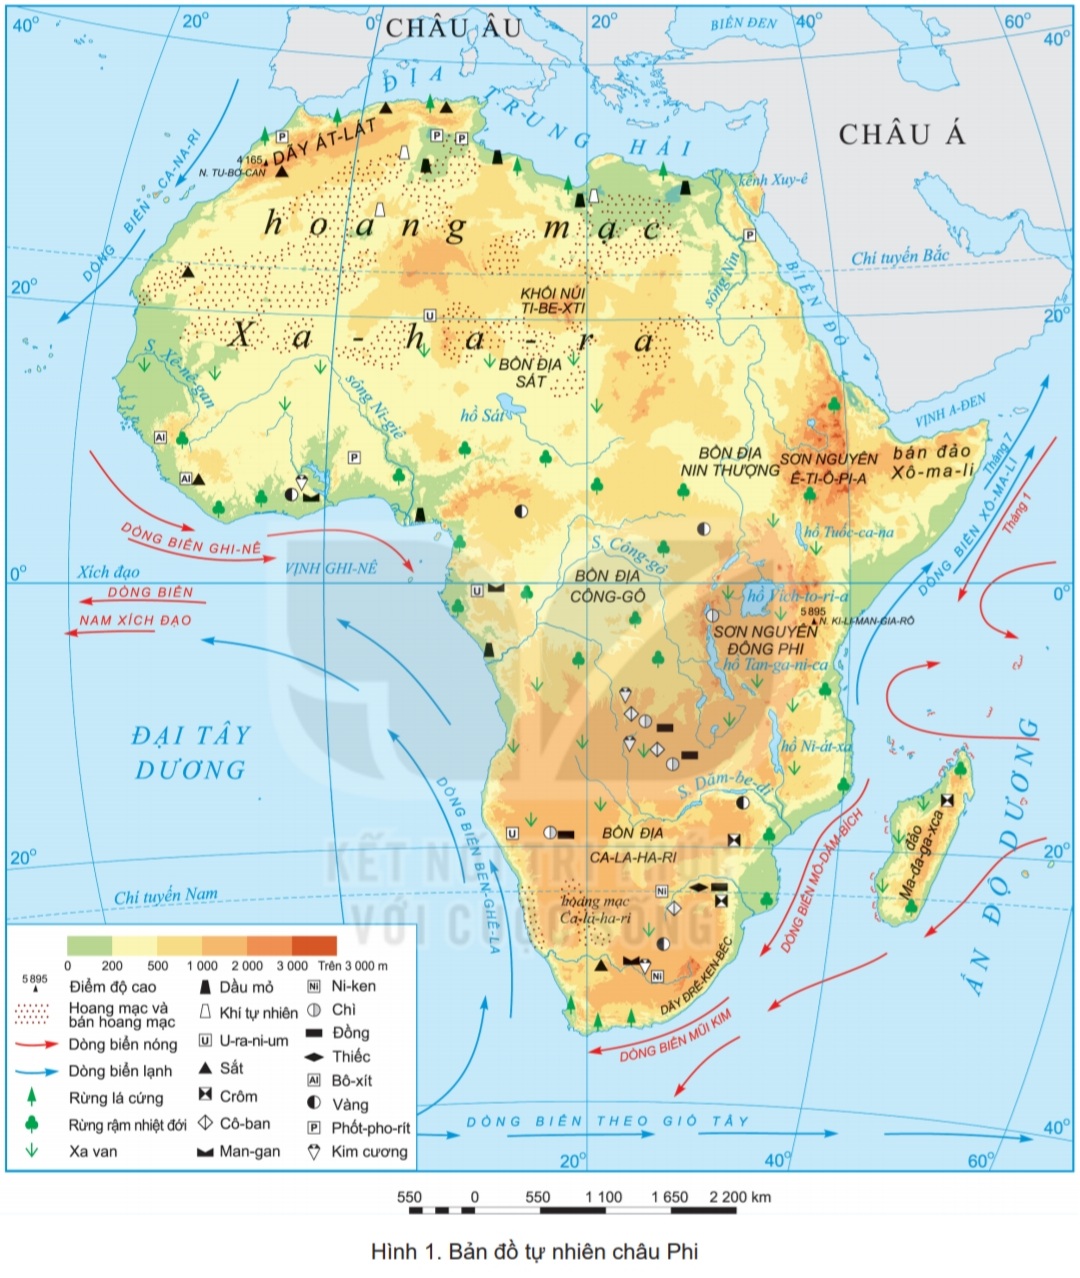 Địa lý châu Phi: Mọi người hãy tìm hiểu về châu Phi với bộ đồ chơi bản đồ trực tuyến. Sự đa dạng của địa lý và văn hóa ở châu Phi sẽ khiến bạn trở nên thật sự tò mò và hào hứng để khám phá những vùng đất mới.